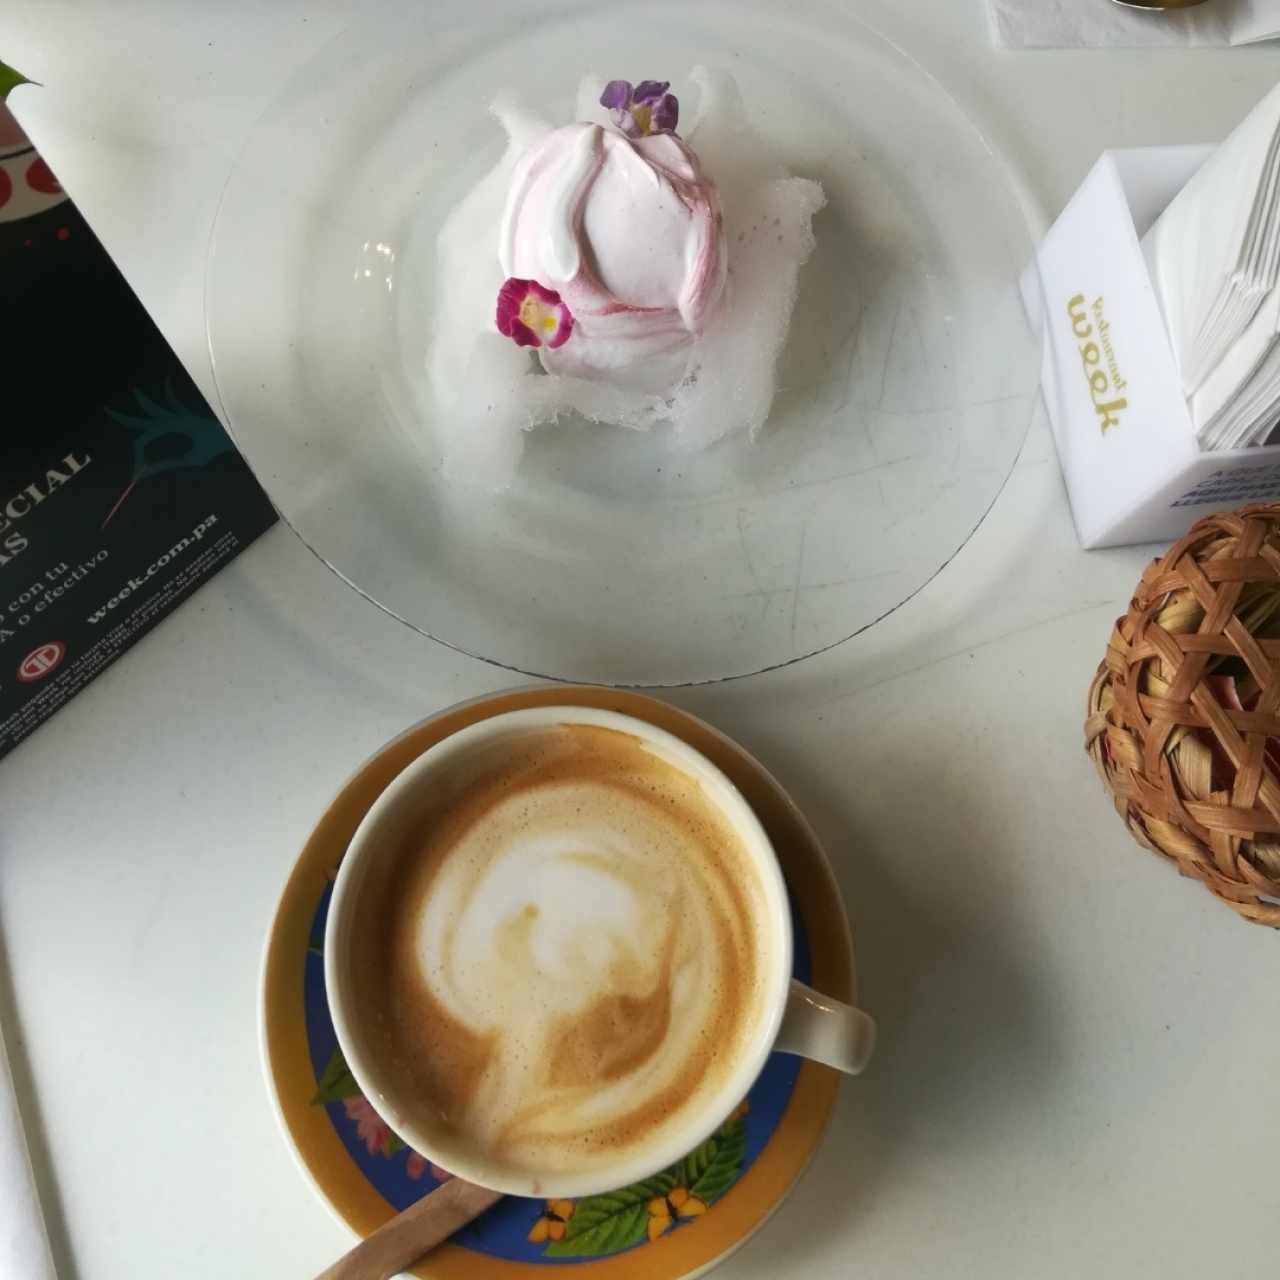 baked alaska, cappuccino